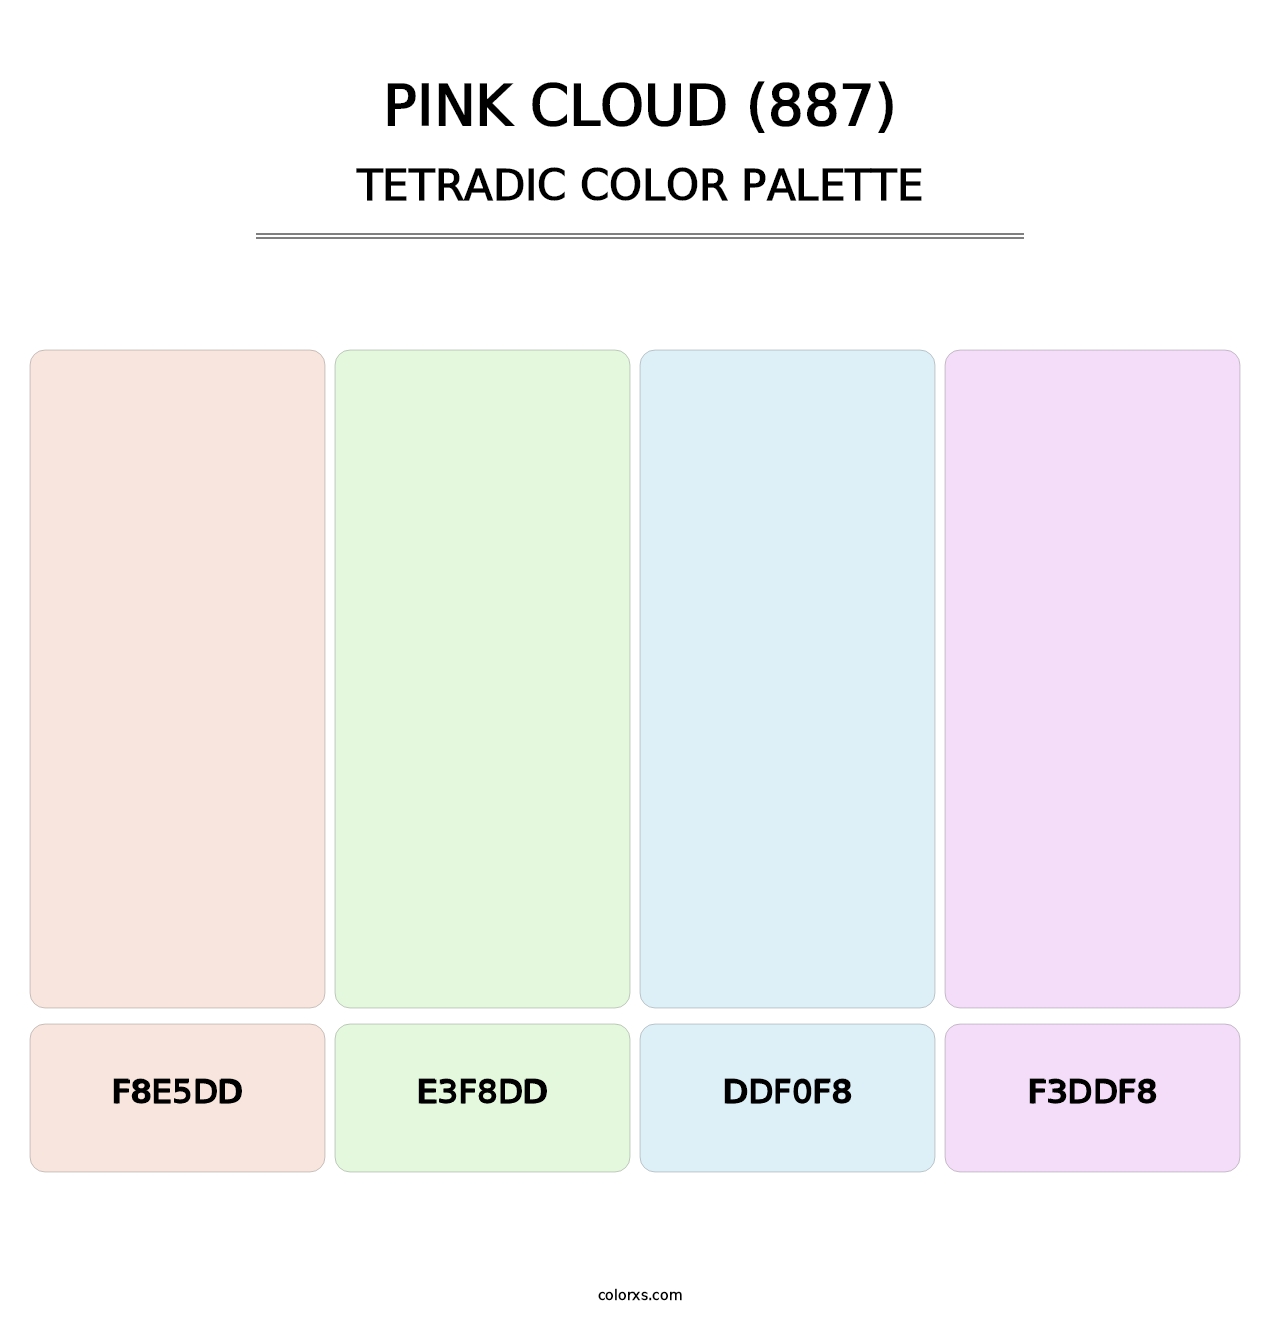 Pink Cloud (887) - Tetradic Color Palette